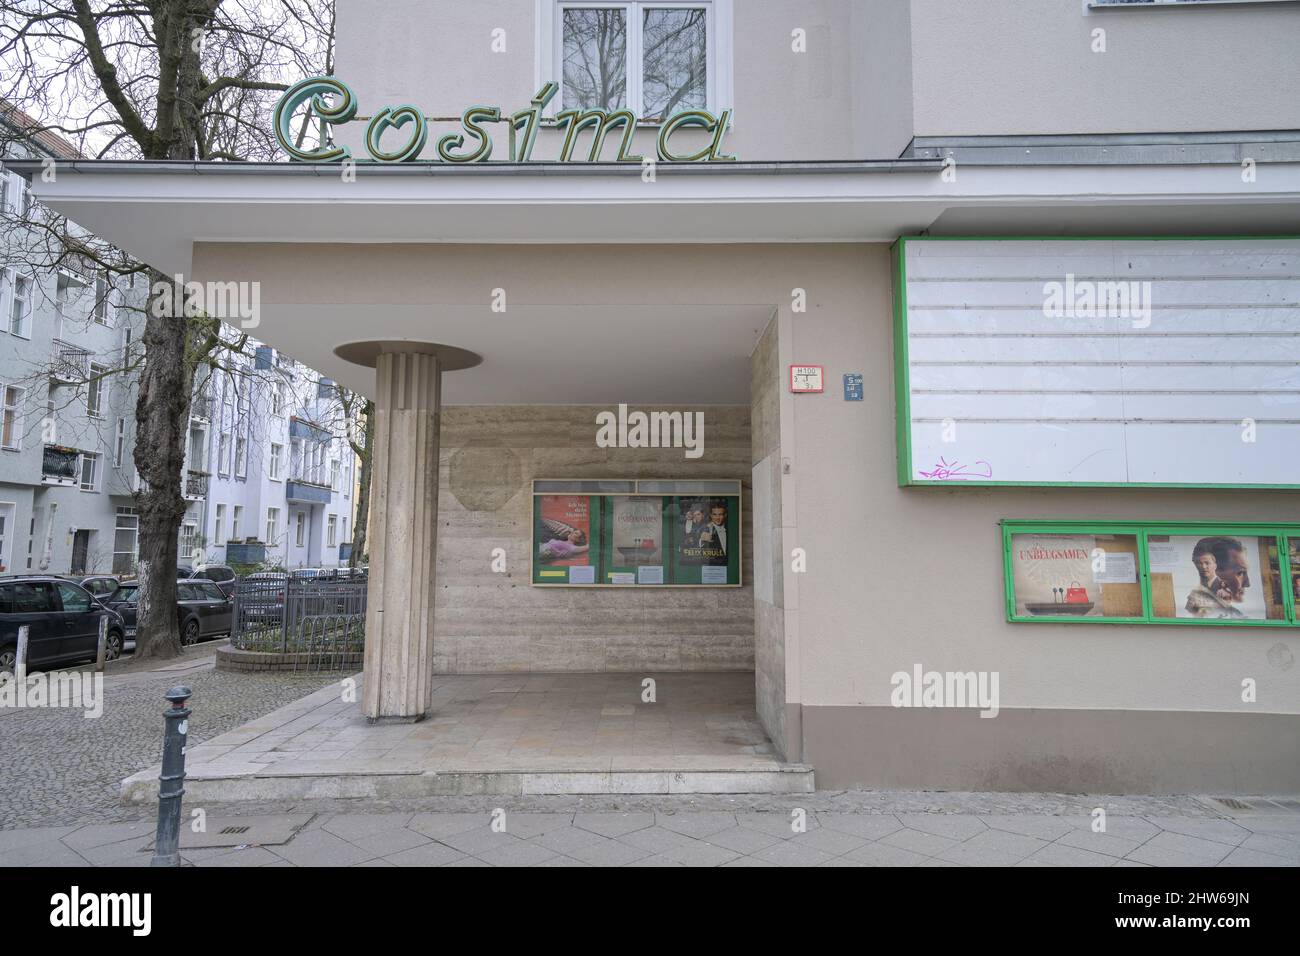 Cosima Kino, Varziner Platz, Friedenau, Schöneberg, Berlin, Deutschland Stock Photo